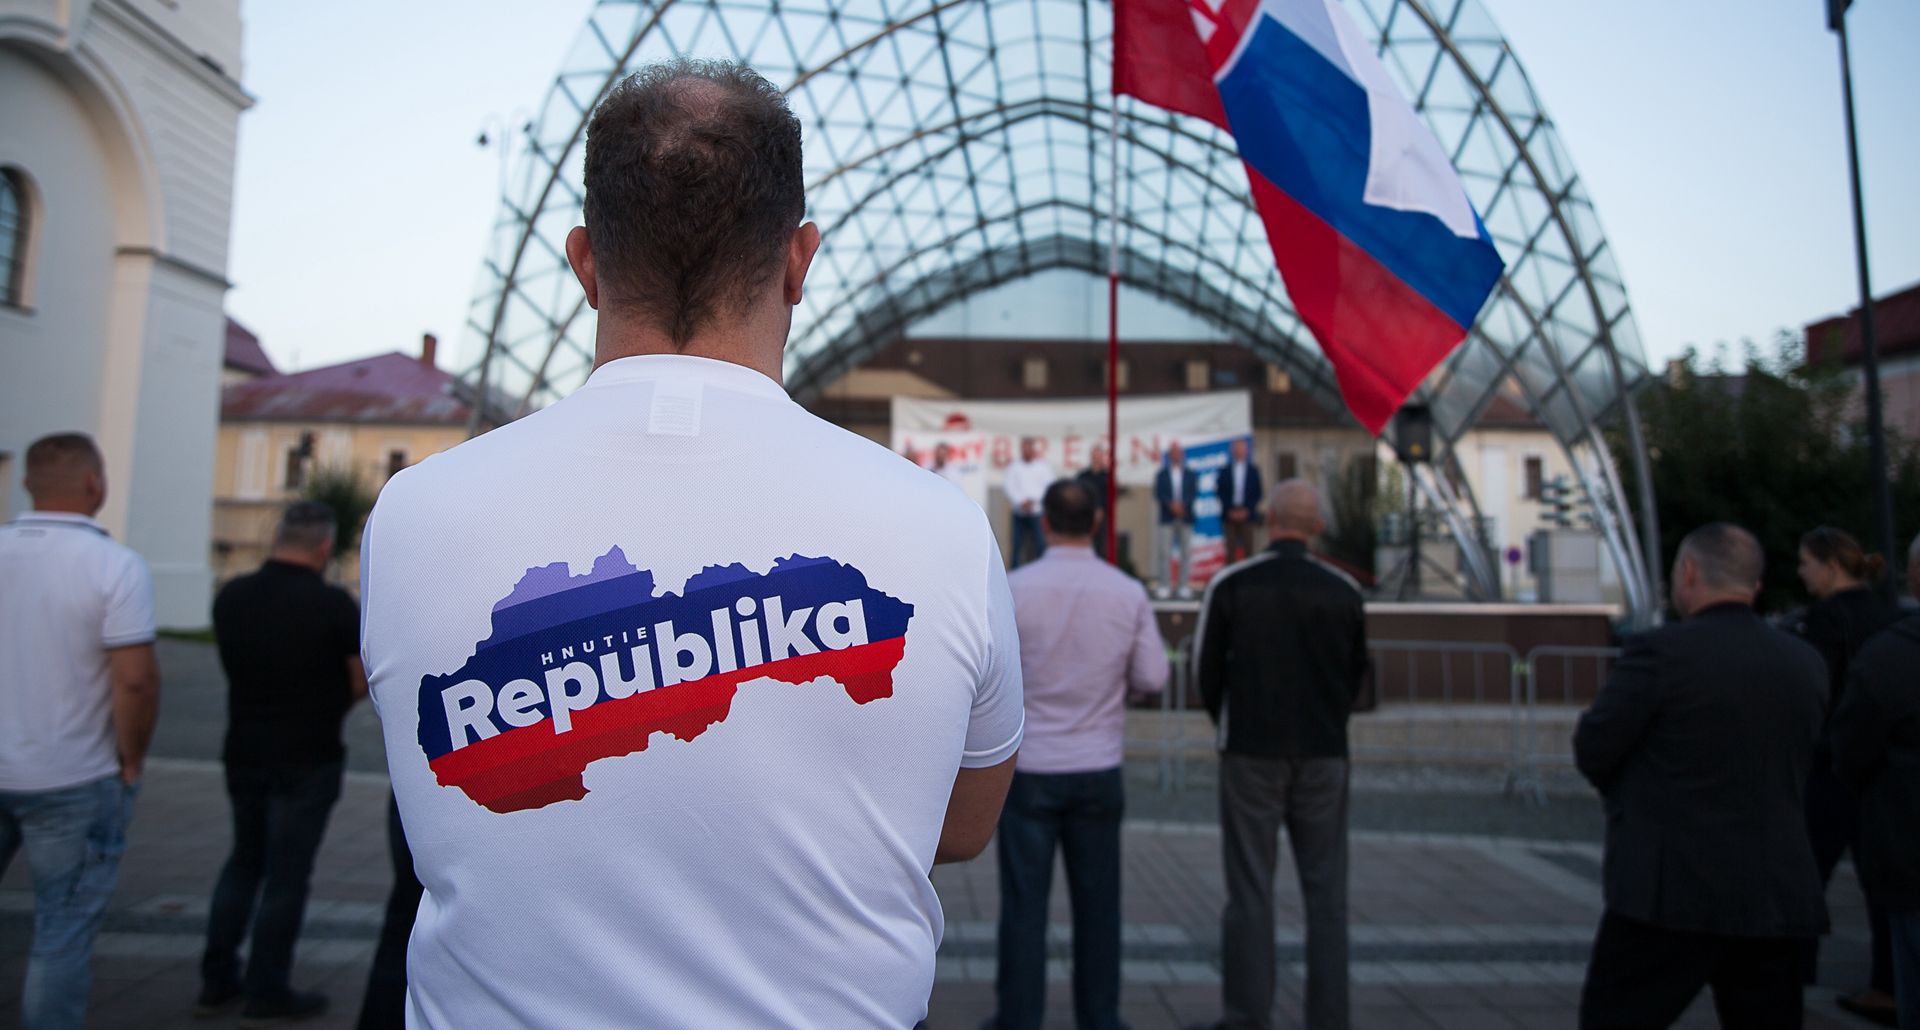 30 września na Słowacji odbędą się wybory parlamentarne. Faworytem jest populista Robert Fico, a na skrajnej prawicy walczy o głosy partia Republika 